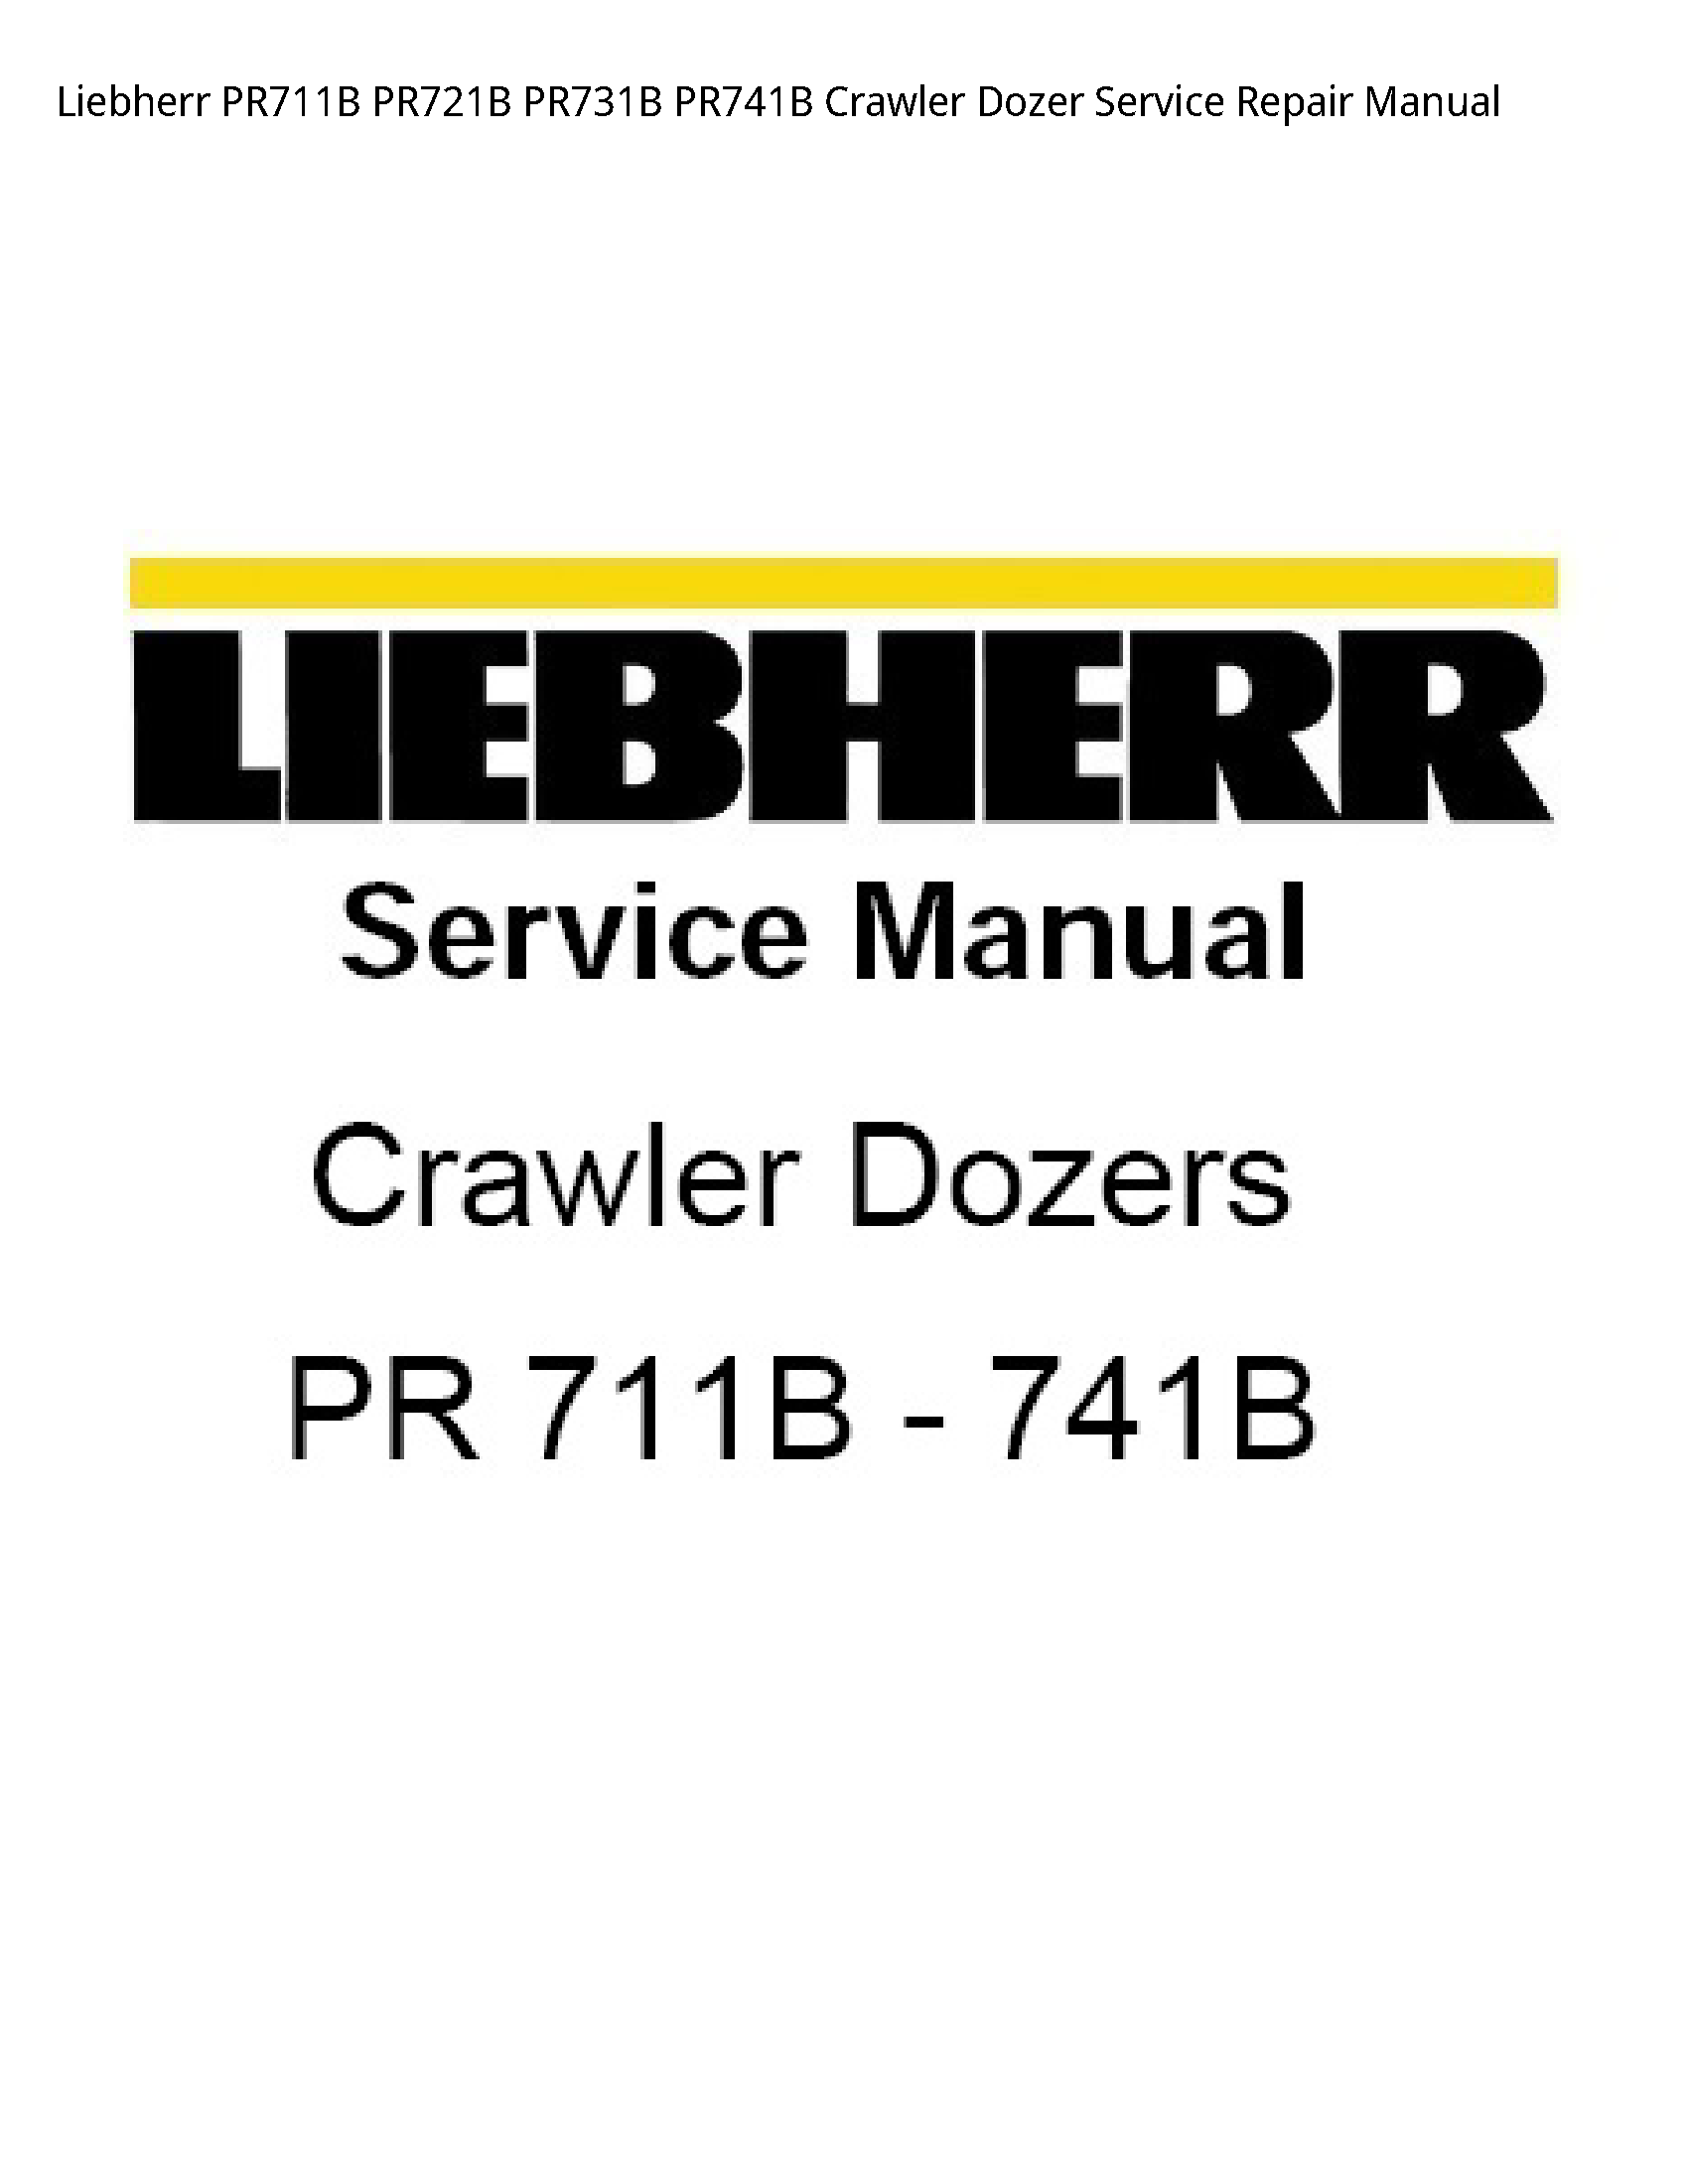 Liebherr PR711B Crawler Dozer manual